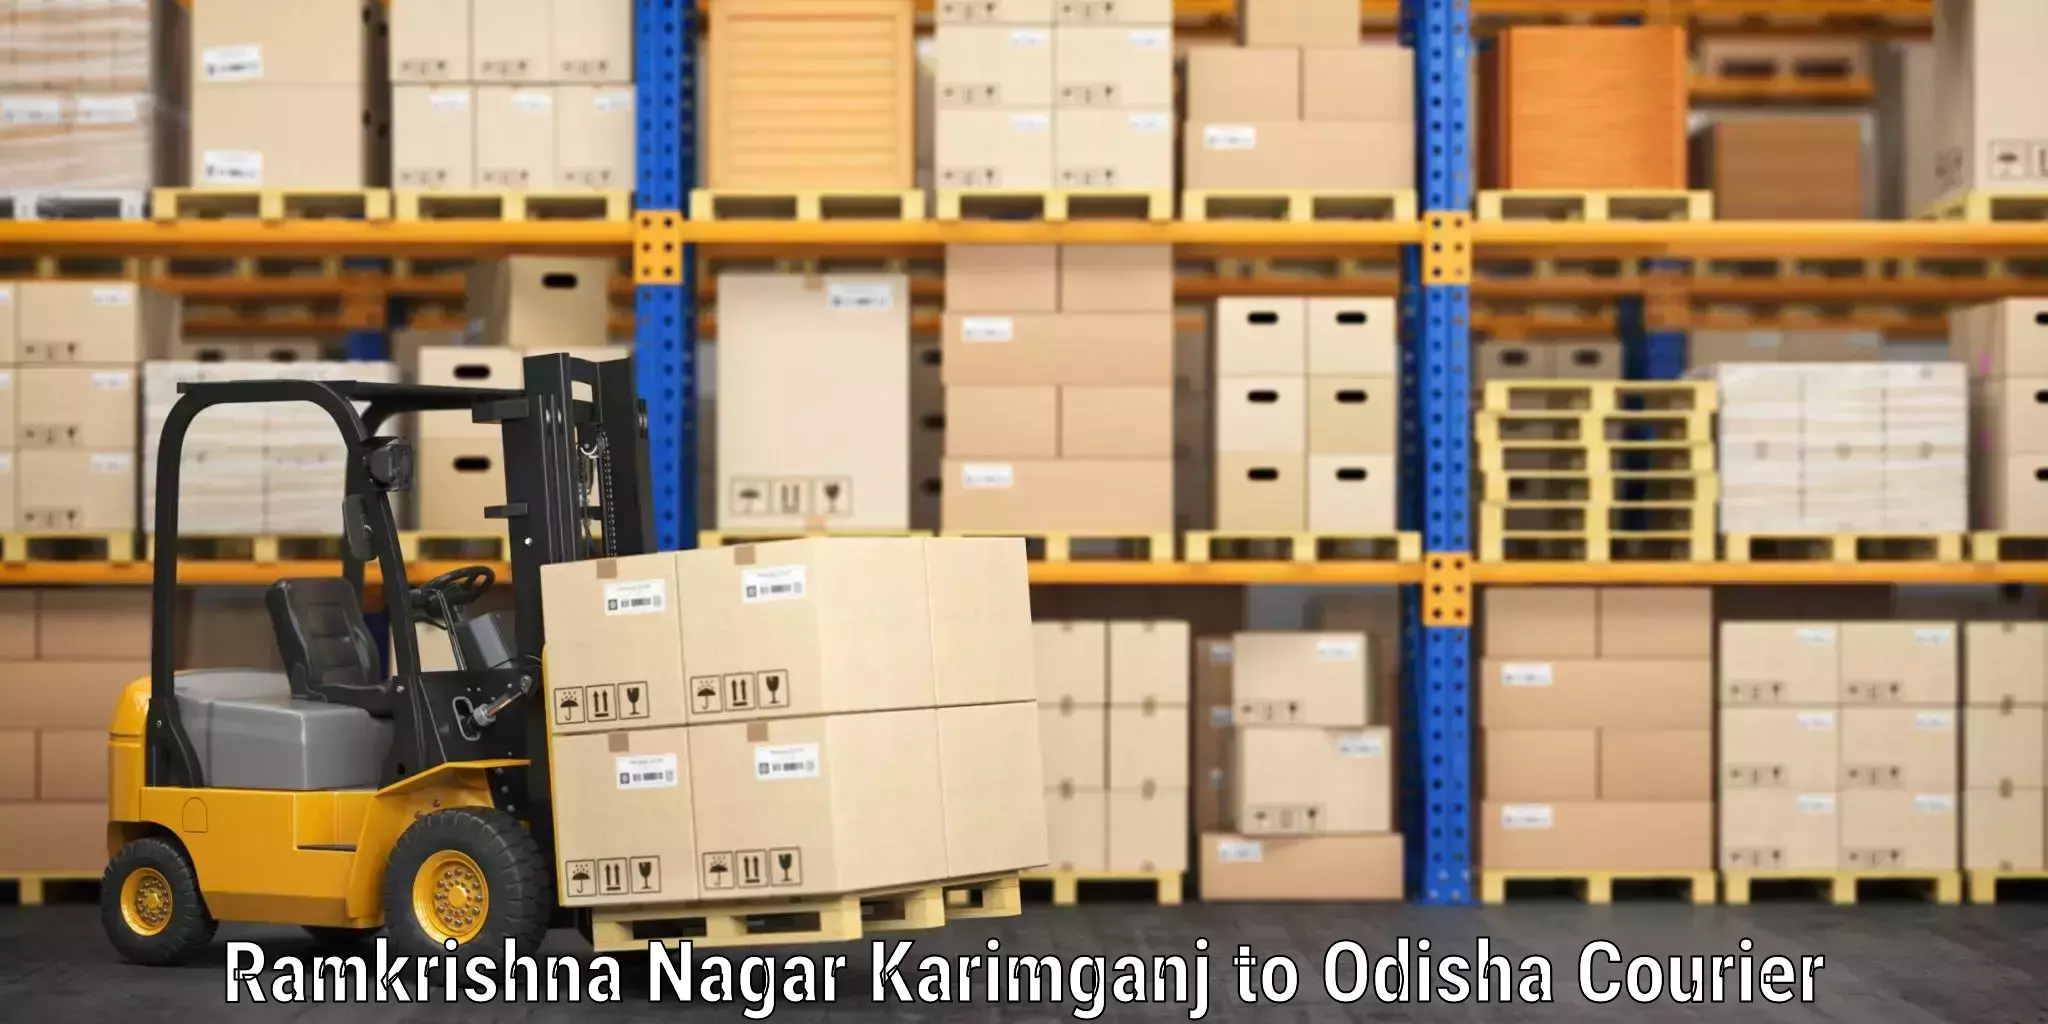 Luggage delivery operations Ramkrishna Nagar Karimganj to Mathili